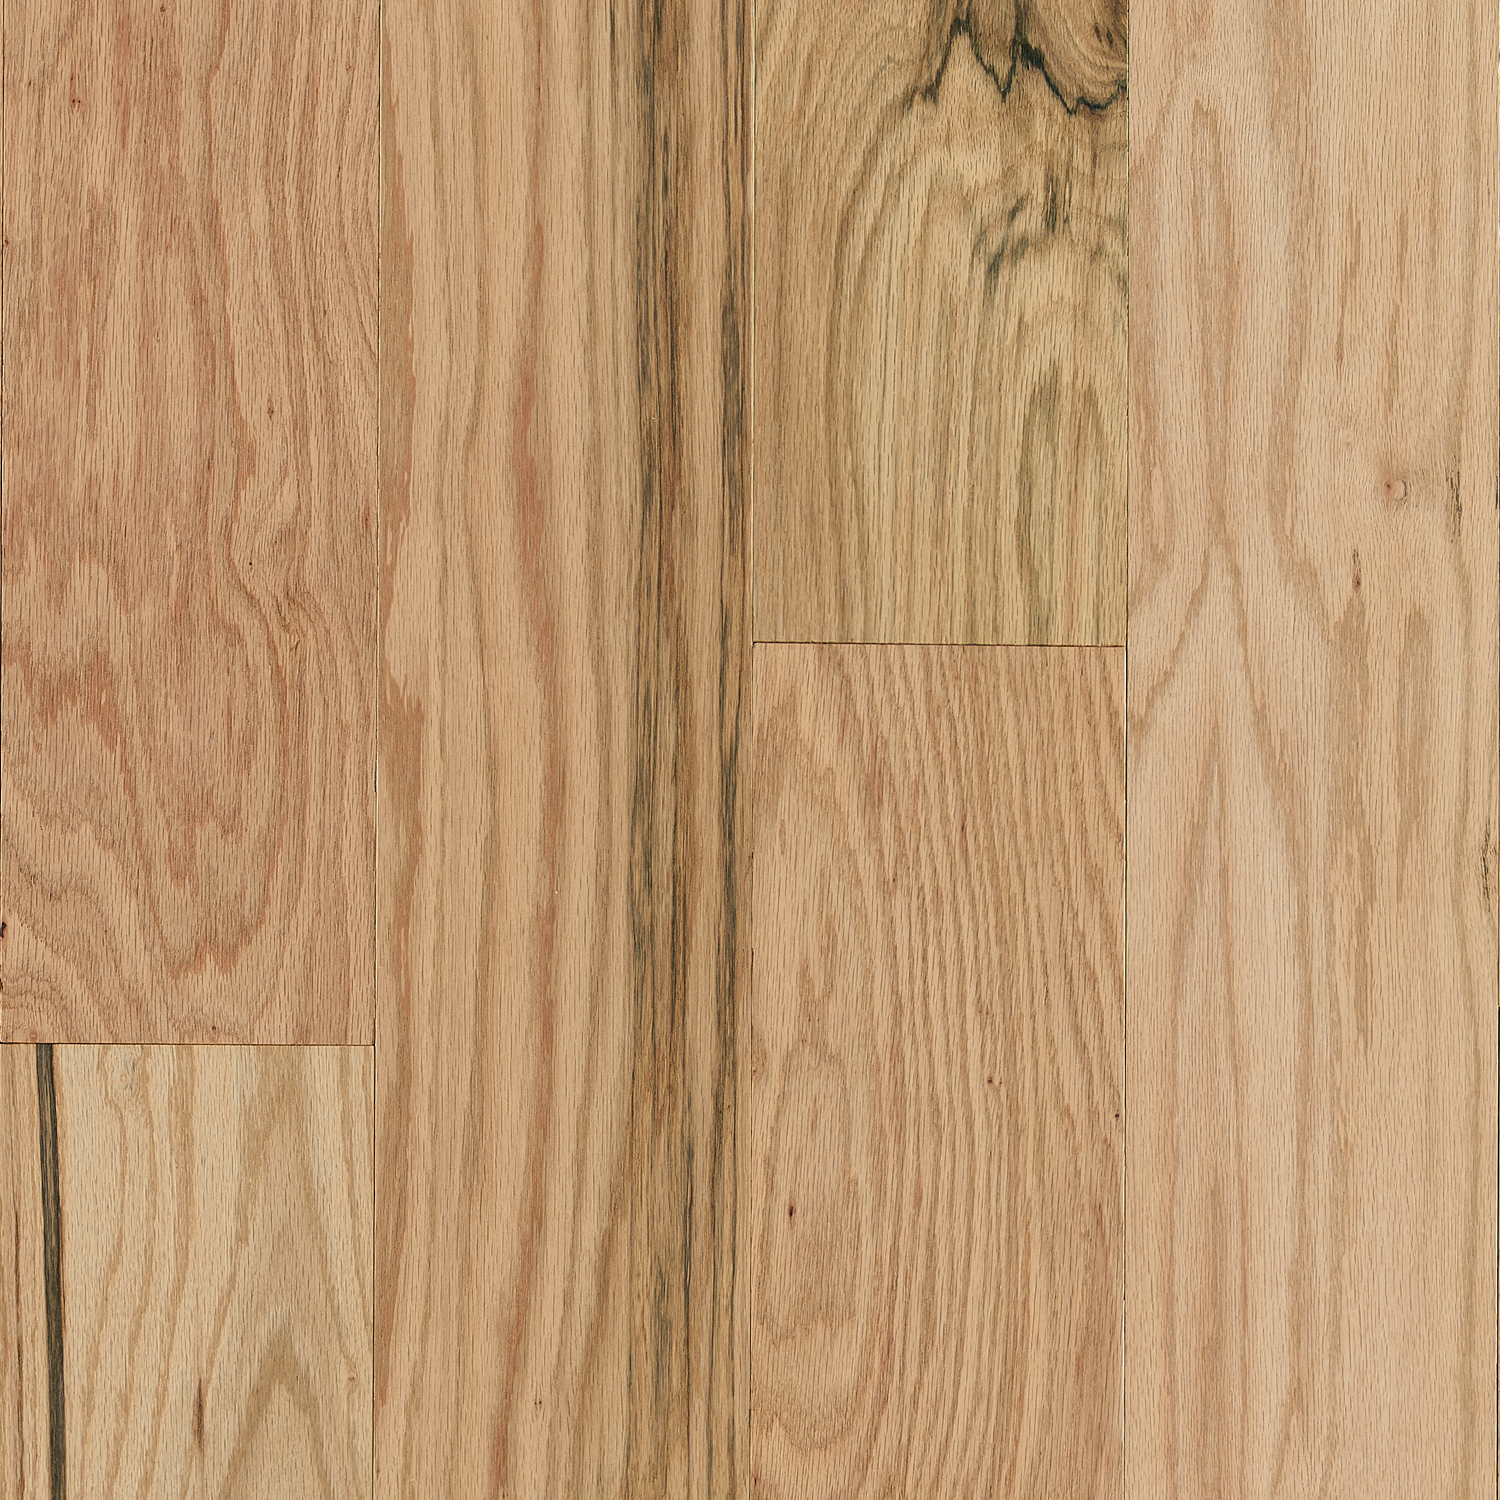 Red Oak Engineered Hardwood Ekah72l01see, 6 Engineered Hardwood Flooring